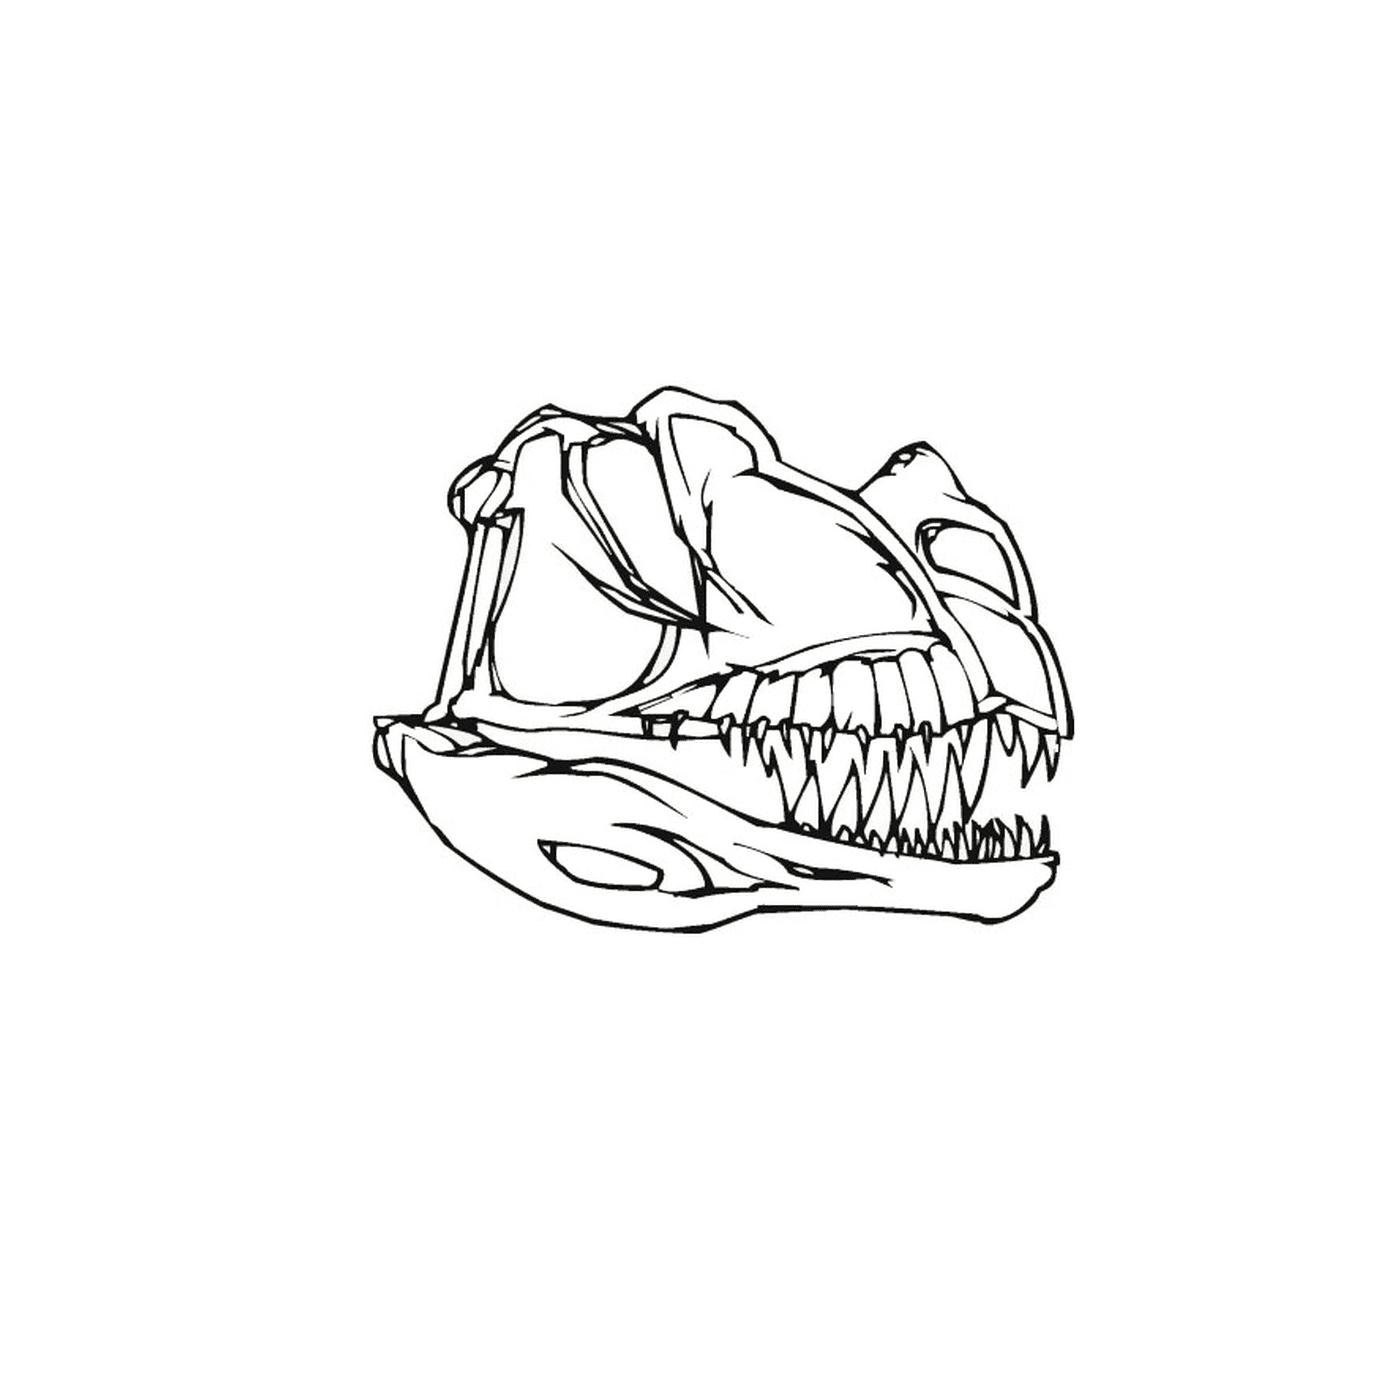  O crânio de um dinossauro com dentes 